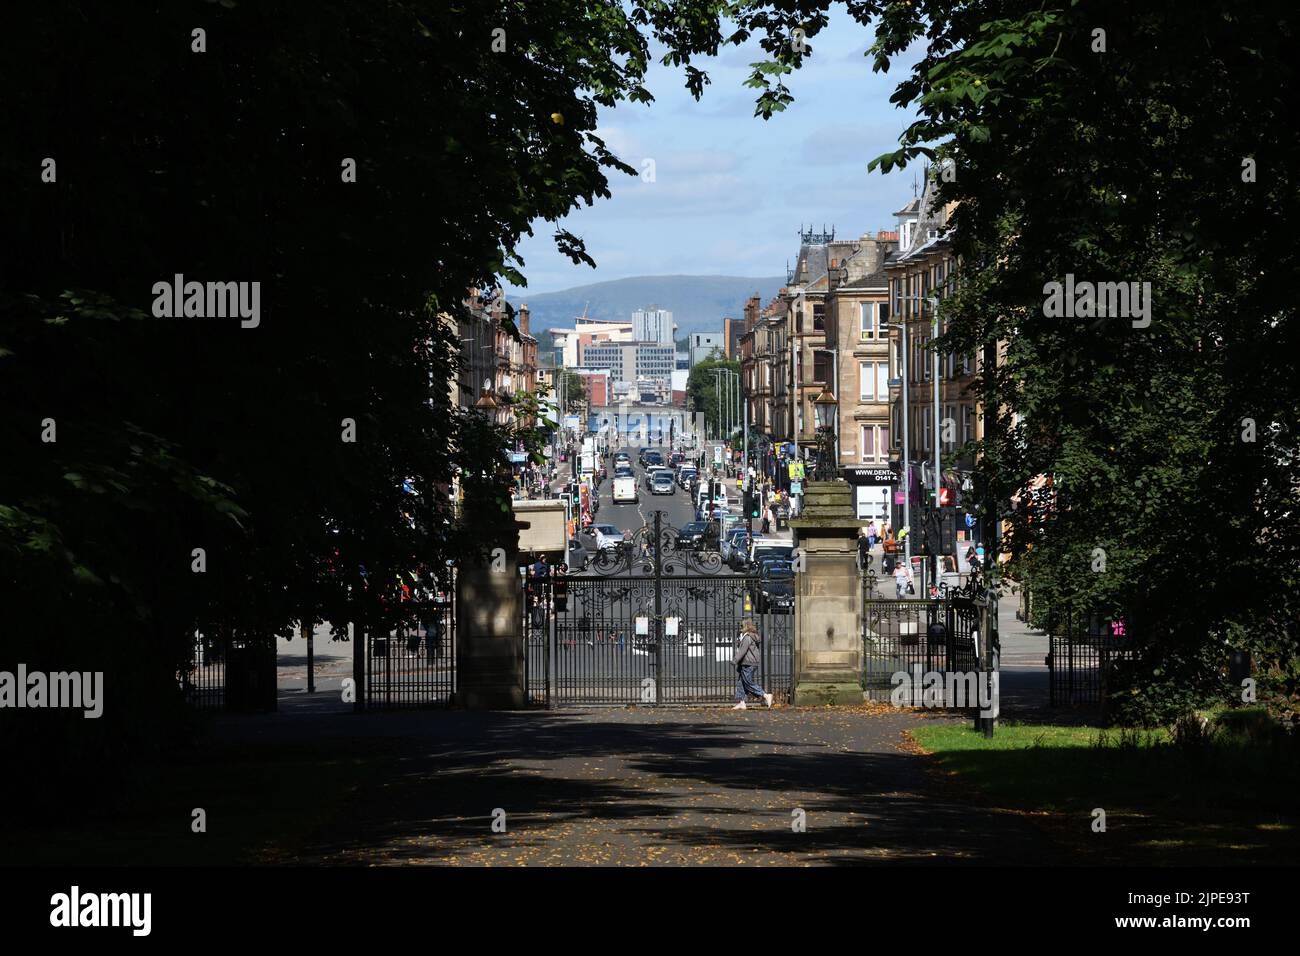 Glasgow, Schottland, Großbritannien. 17., August 2022. Wetter in Glasgow. Warme Sonne ersetzte den Regen der letzten Tage. Blick auf die helle, sonnige Victoria Road, die zum Stadtzentrum von Glasgow führt. Stockfoto